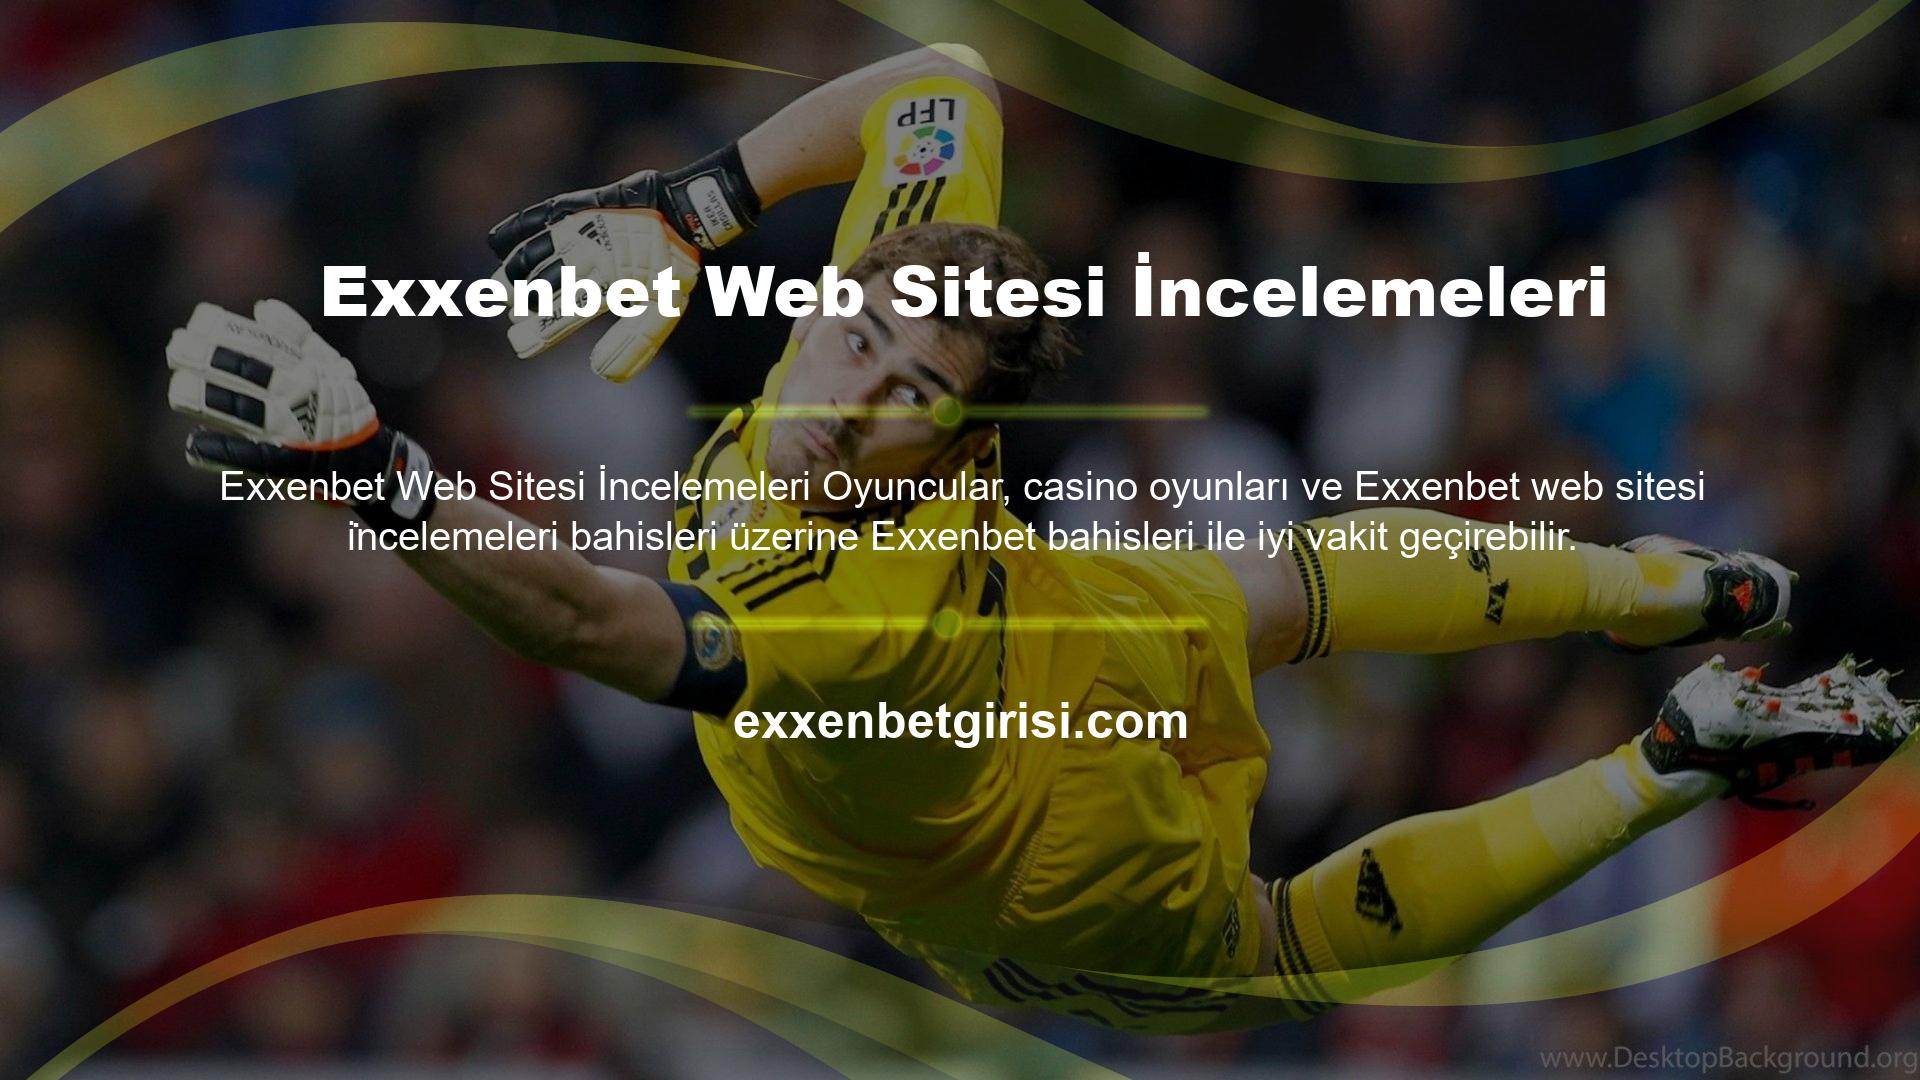 Exxenbet Web Sitesi
Exxenbet sitesinin iletişim yöntemlerini birleştirerek site sorunlarını çözmek isterseniz canlı destek yöntemi de mevcuttur